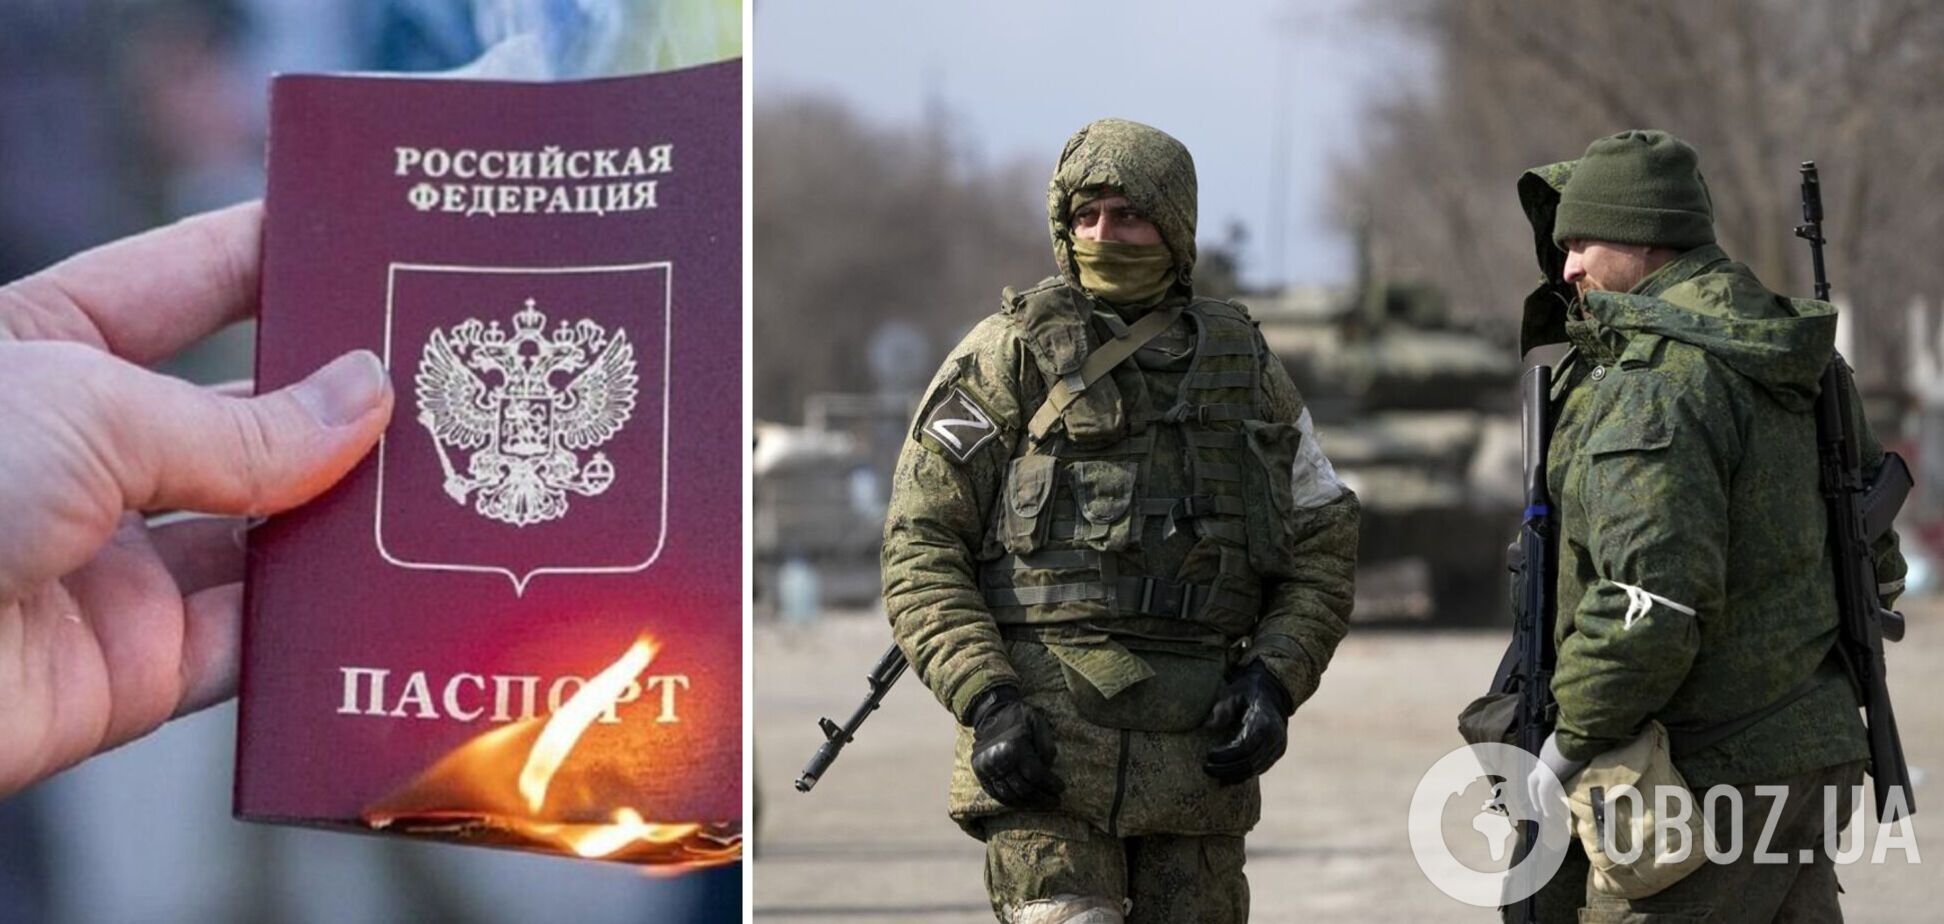 Окупанти на Донбасі створили 'мобільні групи' для примусової видачі паспортів РФ пенсіонерам – ЦНС